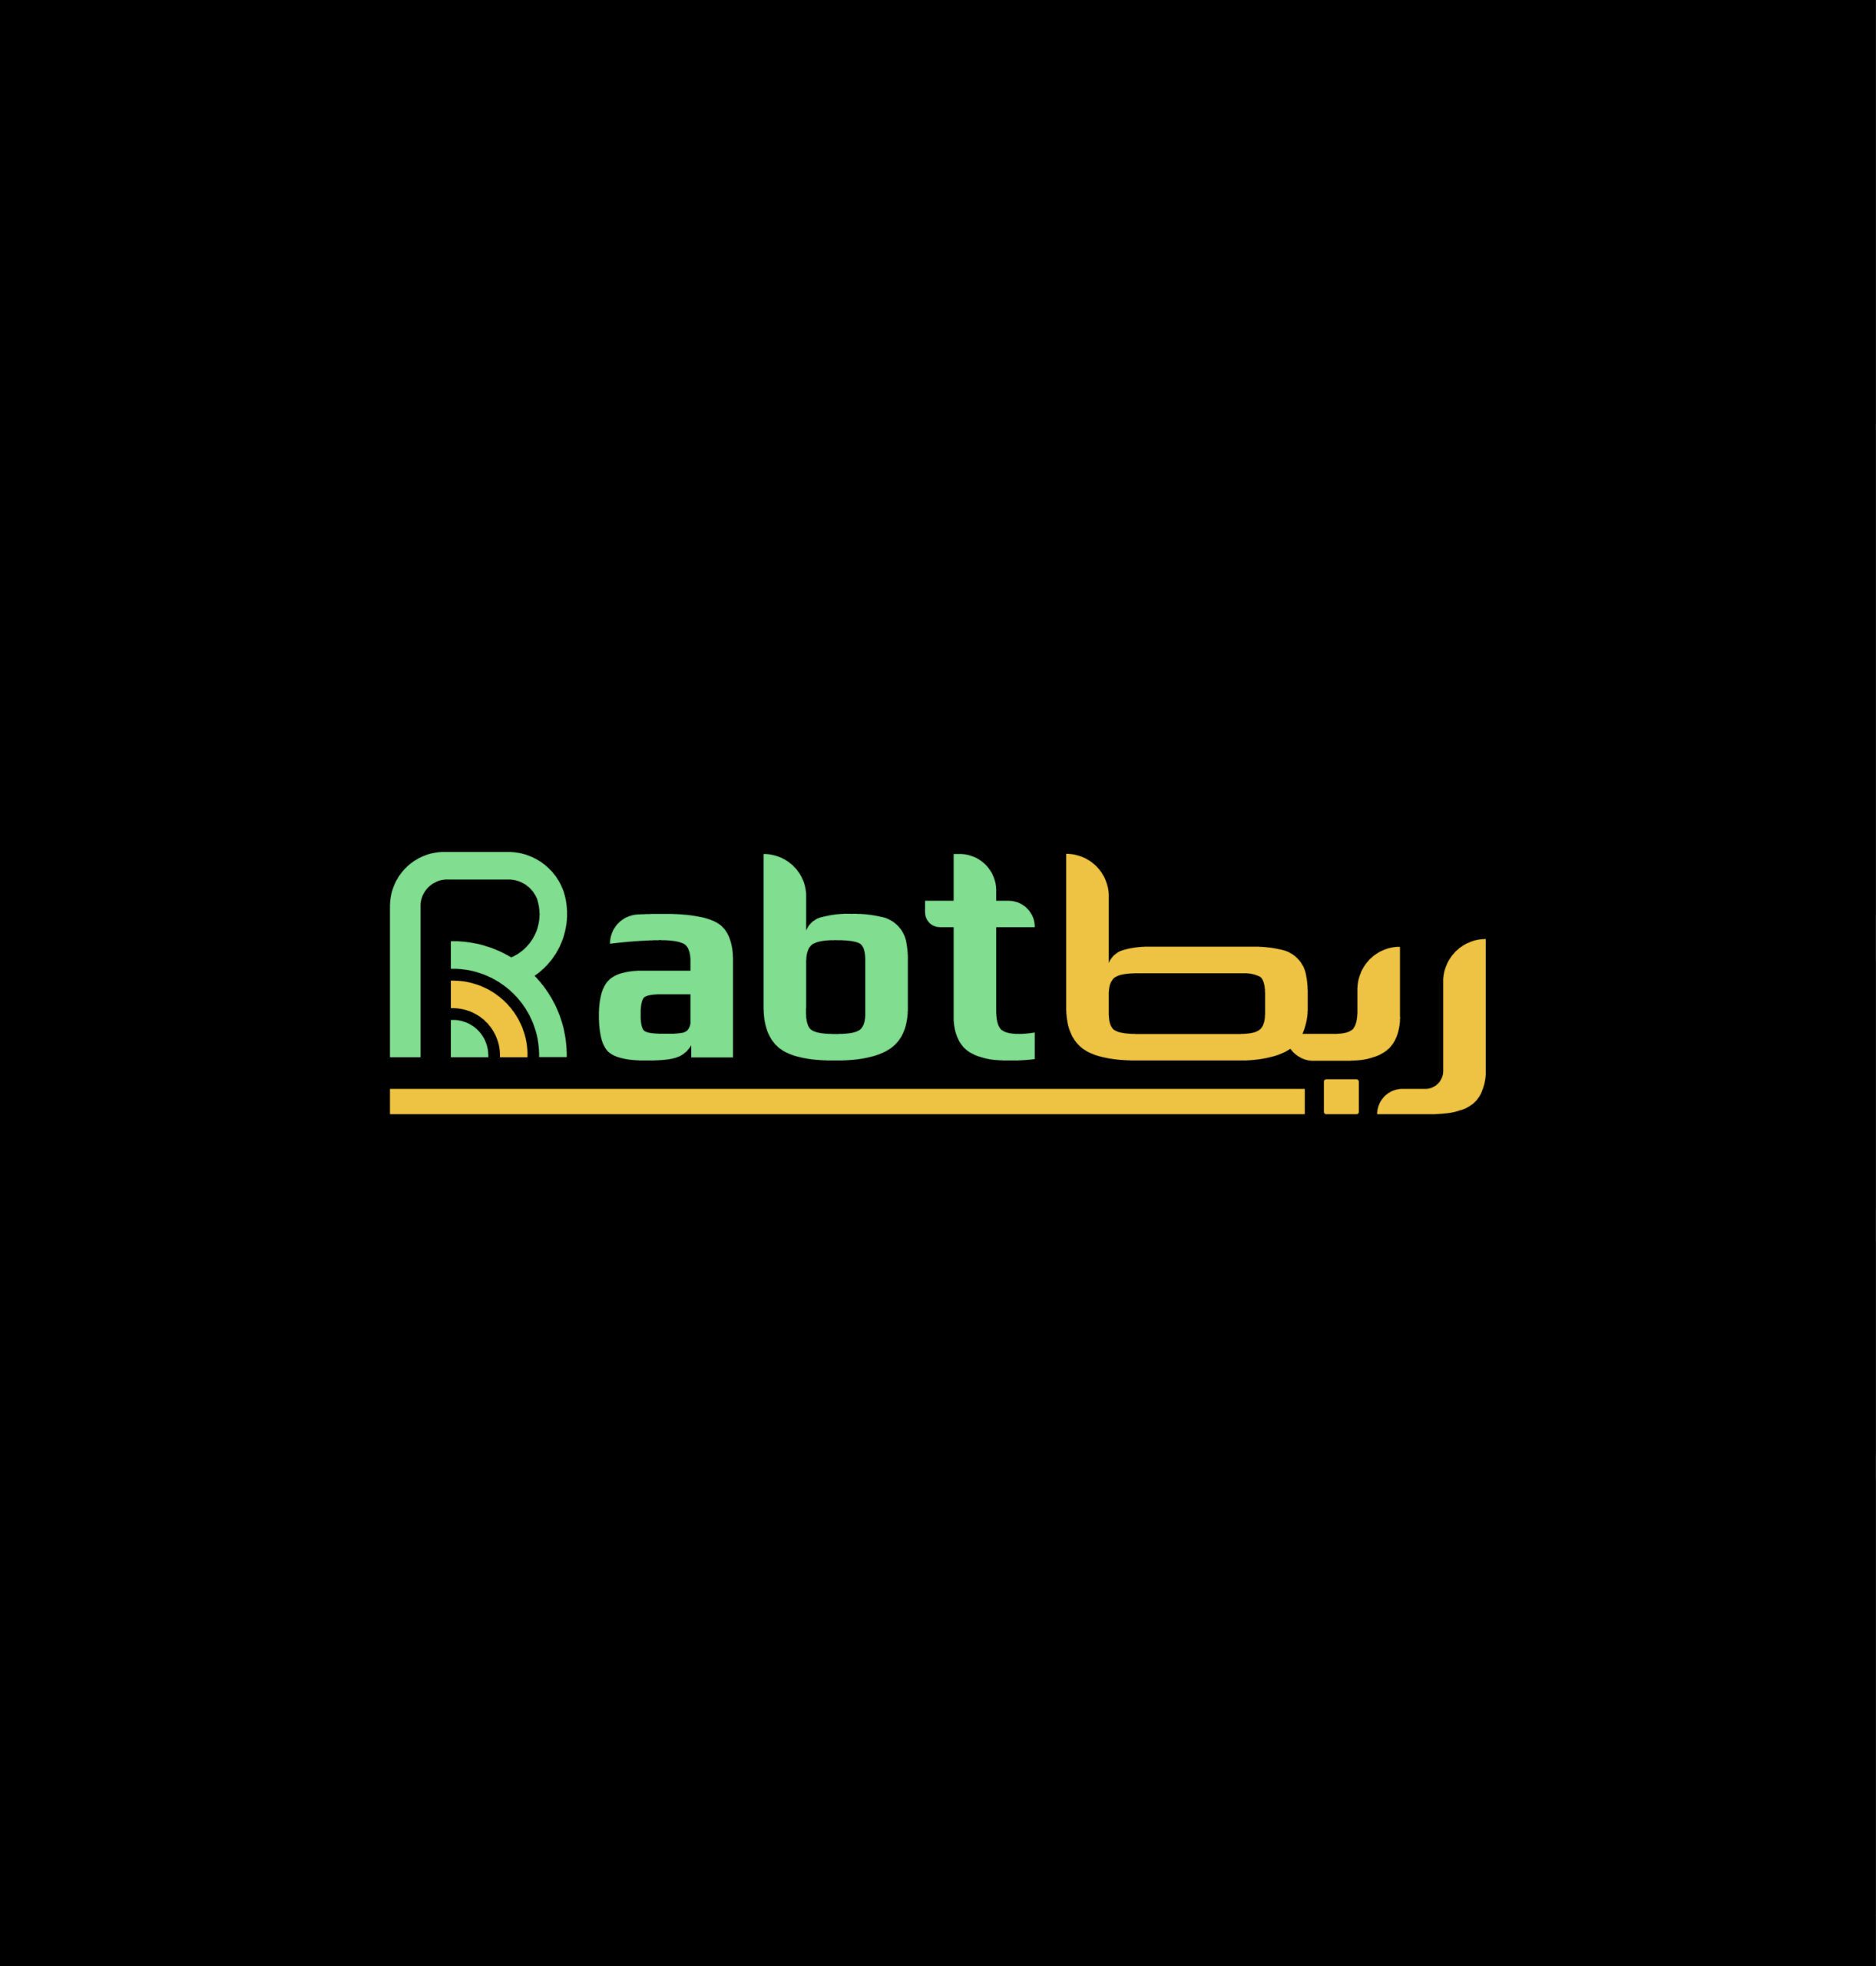 rabt logo case study